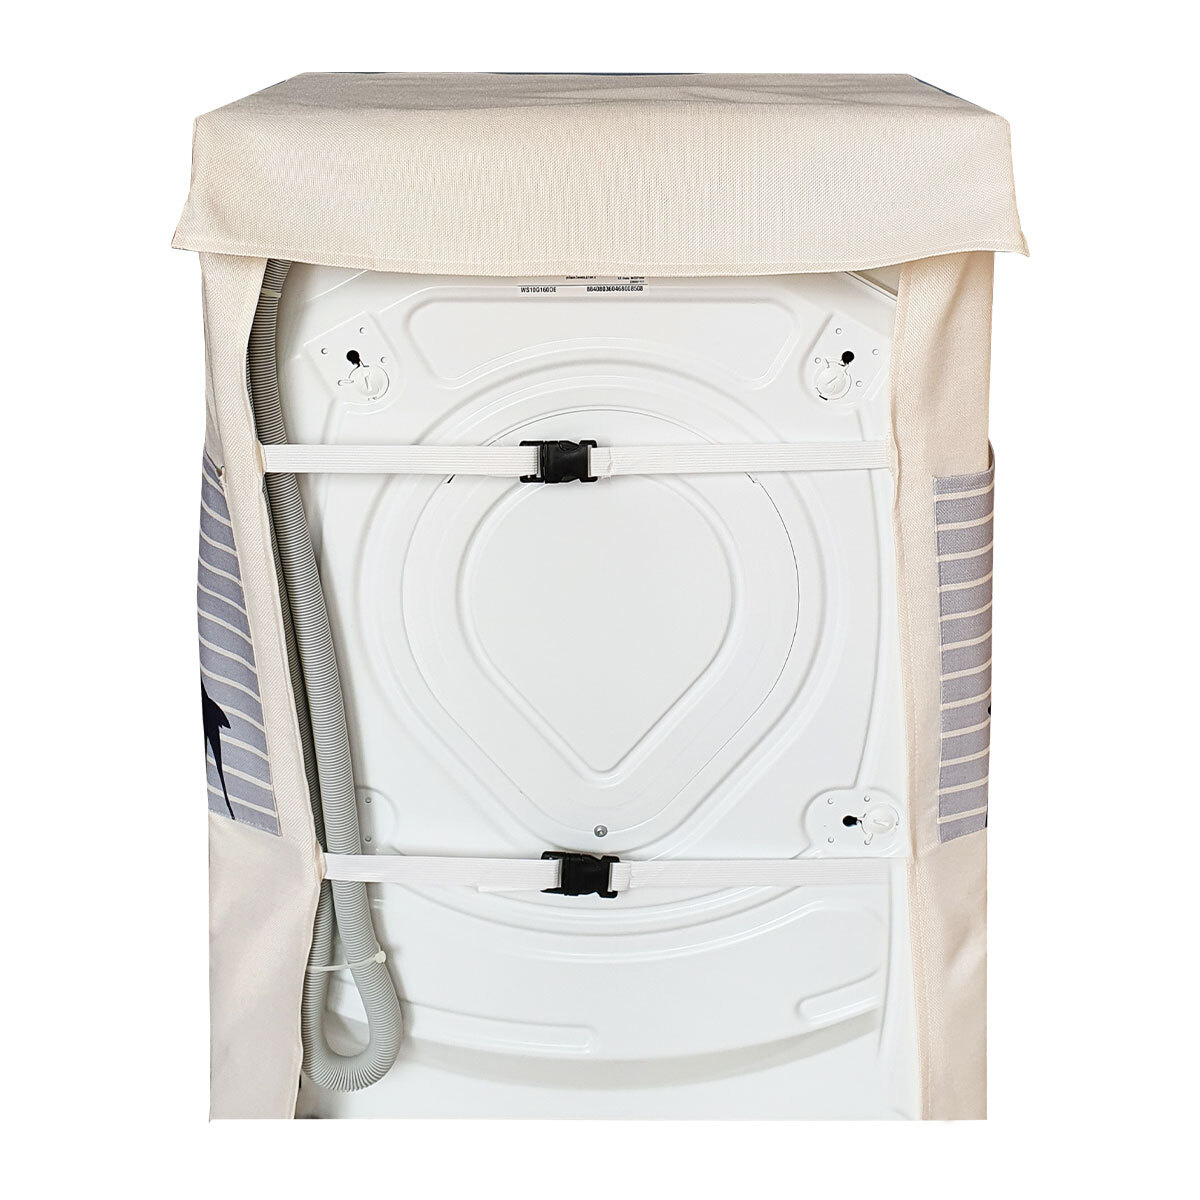 В чехлах SaveHome максимально удобно организован доступ к загрузке белья и органам управления стиральной машинки.